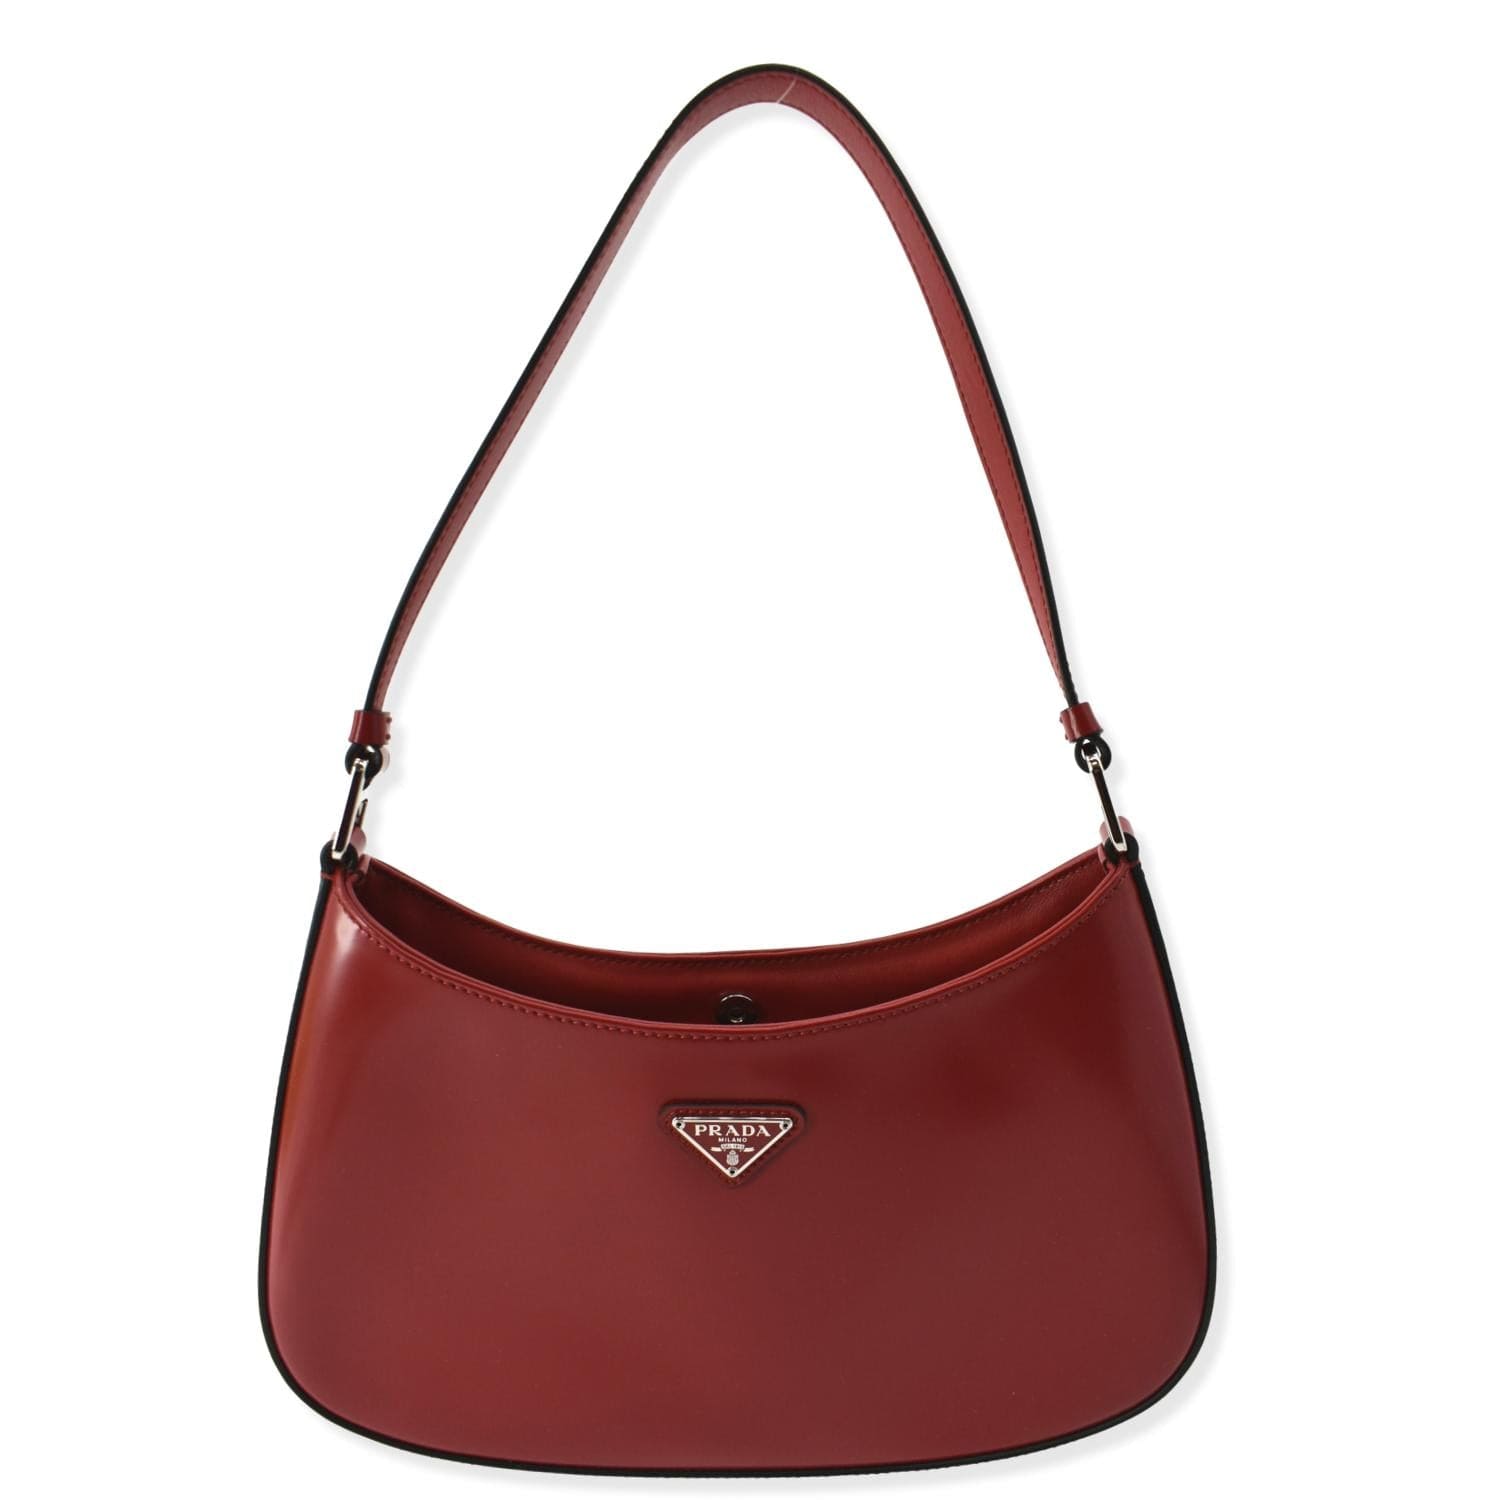 Prada Red brushed leather shoulder bag